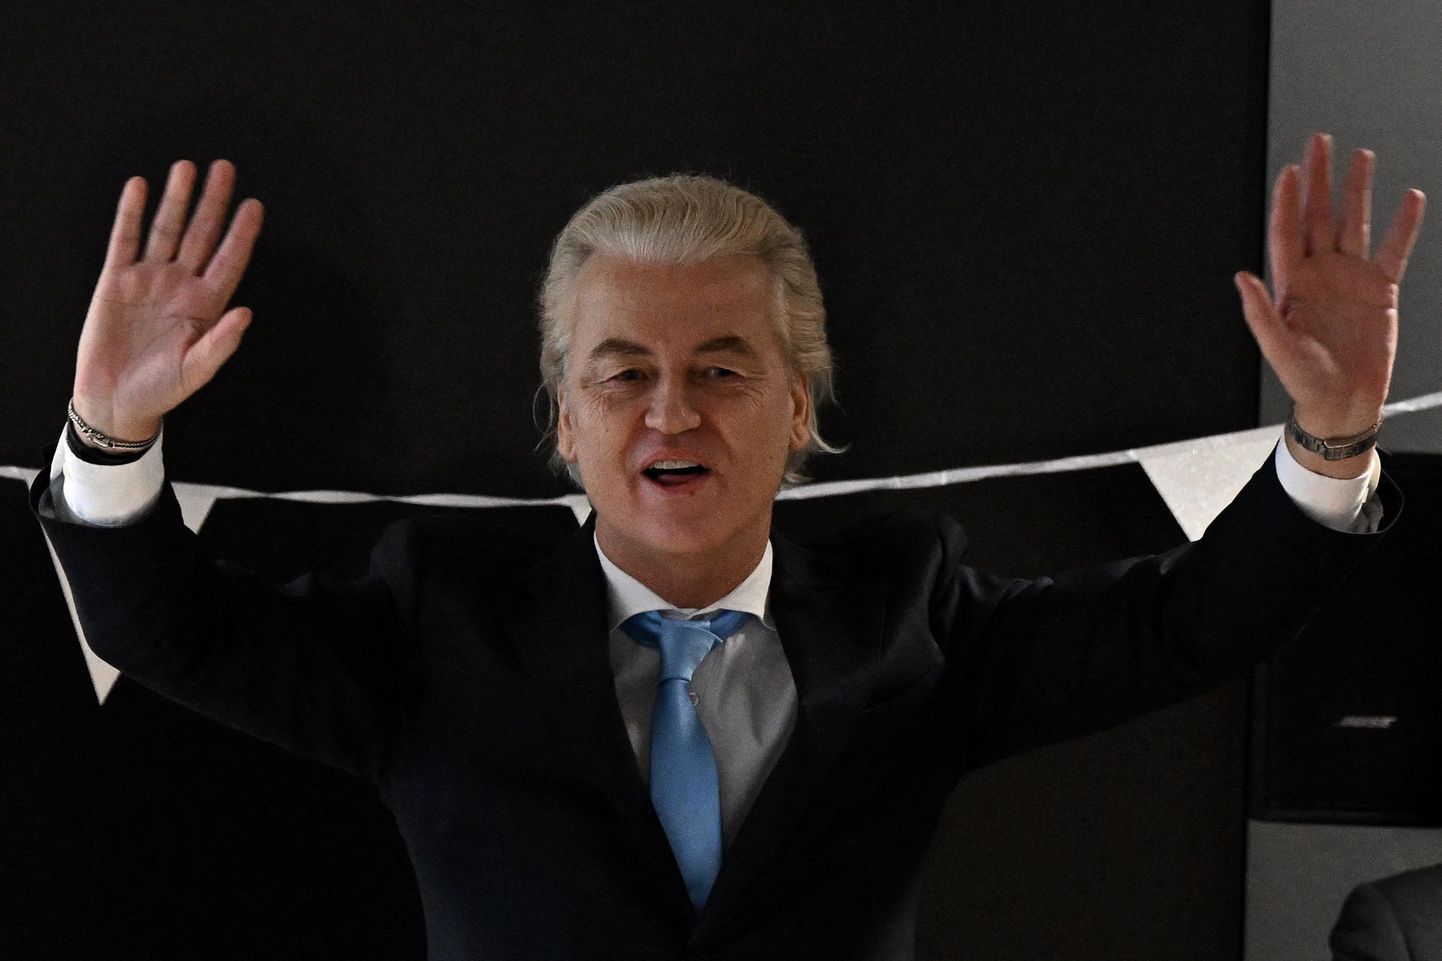 Paremäärmusliku Vabaduspartei juht Geert Wilders võitis suure ülekaaluga Novembris toimunud Hollandi erakorralised parlamendivalimised